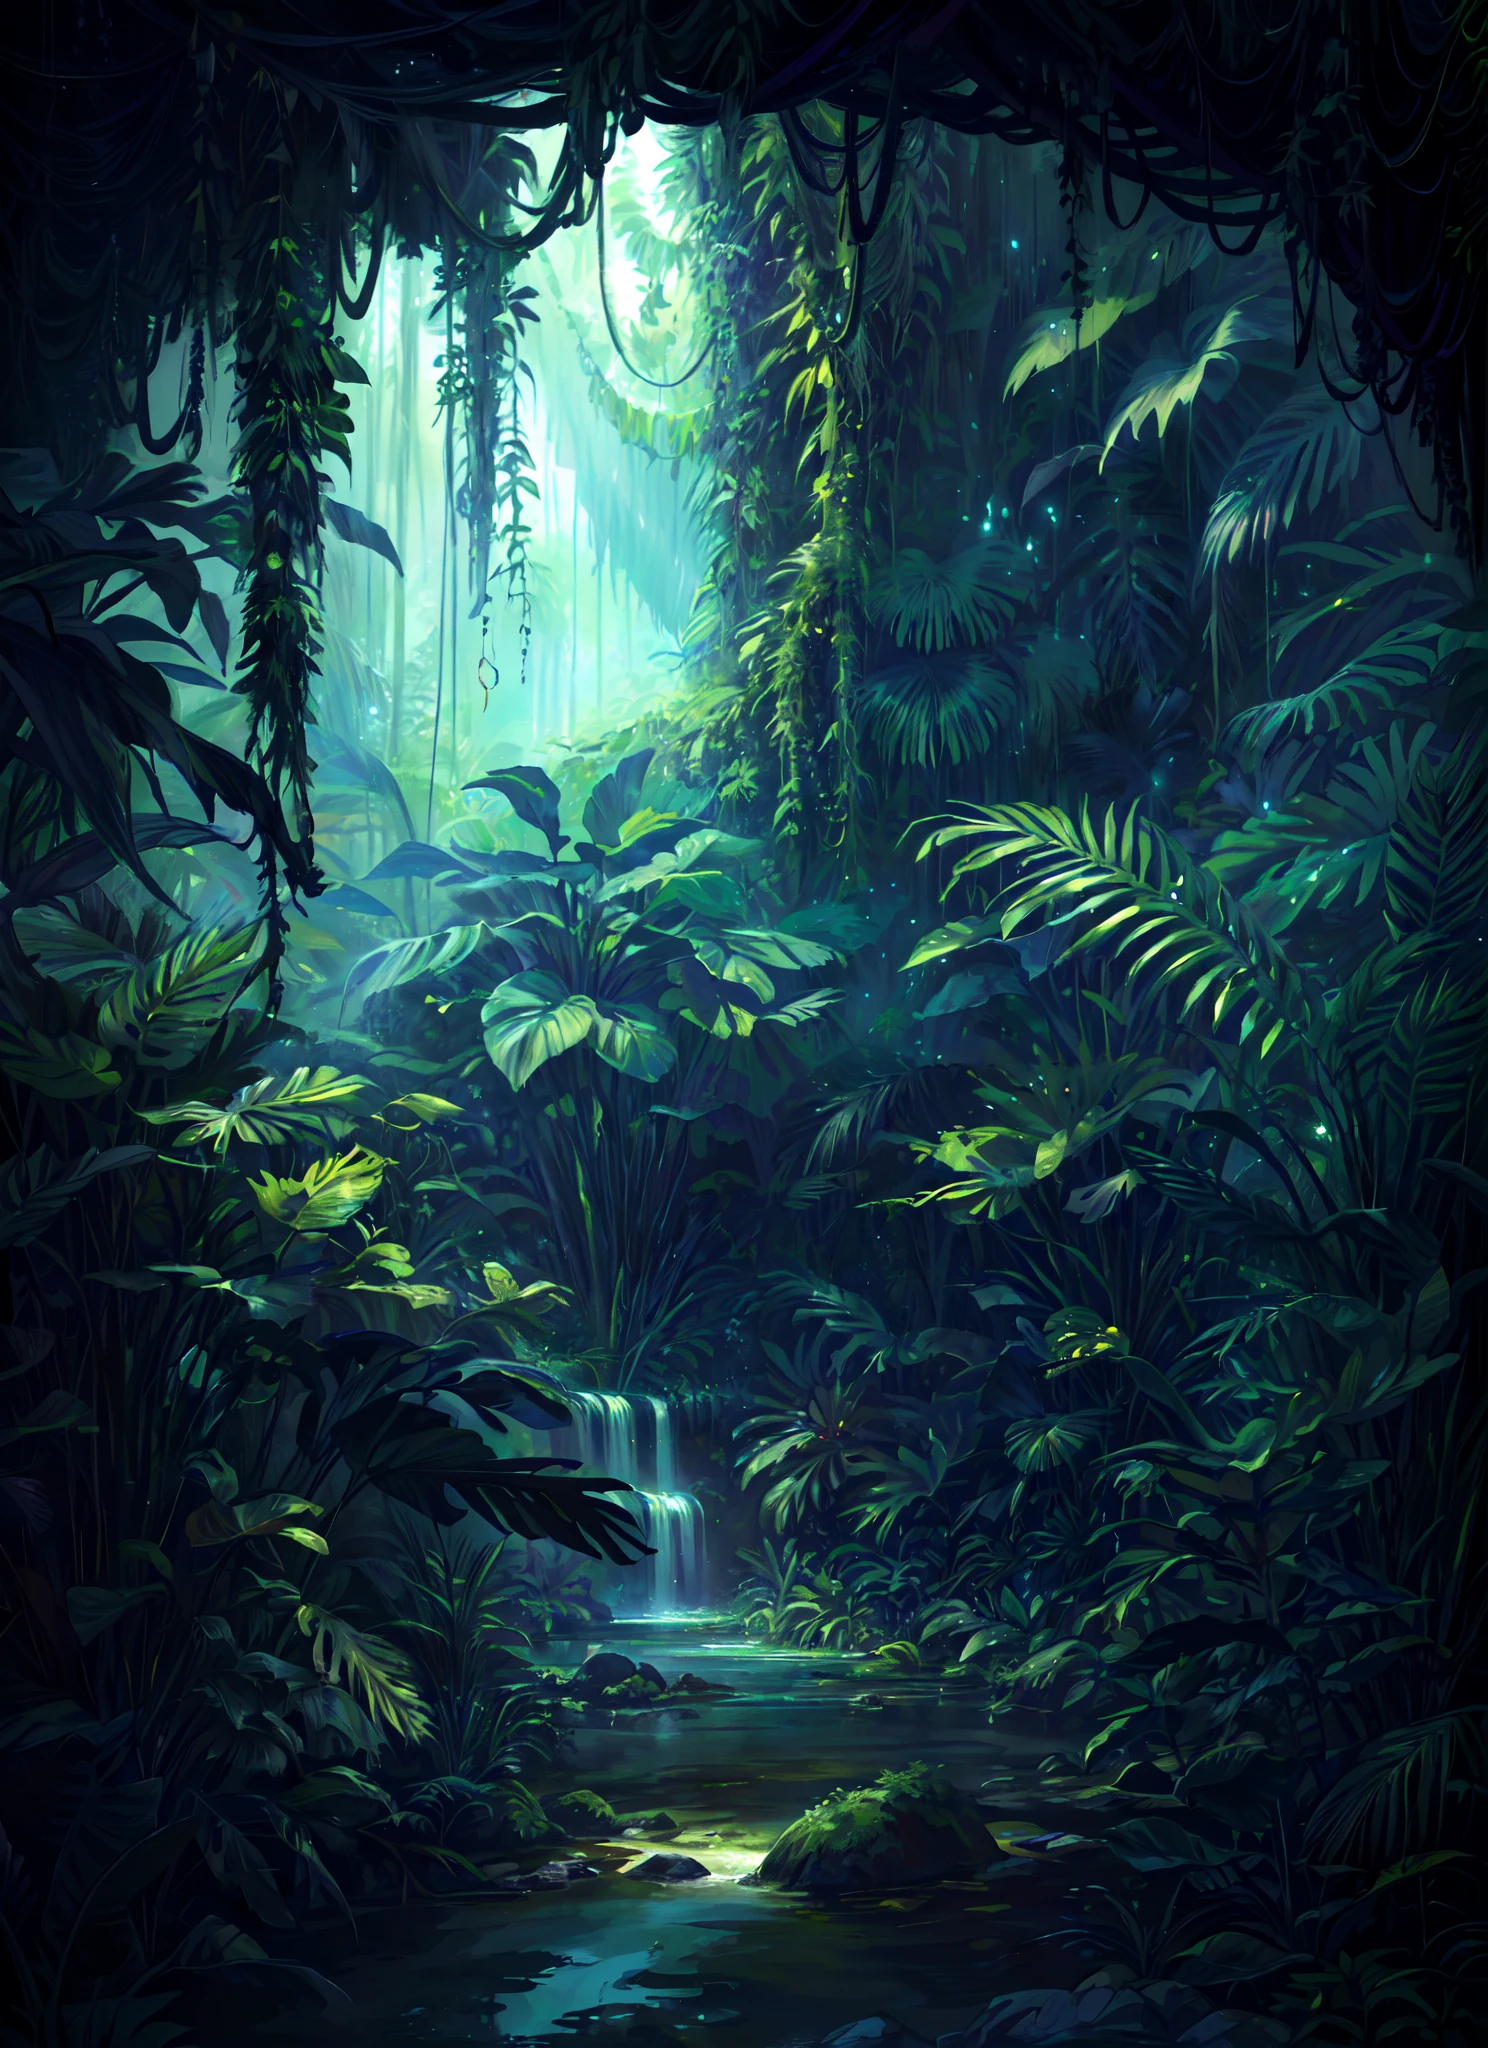 Una pintura digital de una escena de la selva con un arroyo y árboles, Selva profunda de otro mundo., jungla de fantasía, art nouveau ambiente selvático, textura de la selva profunda, ambiente selvático, jungla espeluznante, una jungla alienígena, overgrown ambiente selvático, Hermosa selva, paisaje selvático, inside una jungla alienígena, Jungla de fondo, Bajo las selvas del mundo exterior, pintura misteriosa de la selva